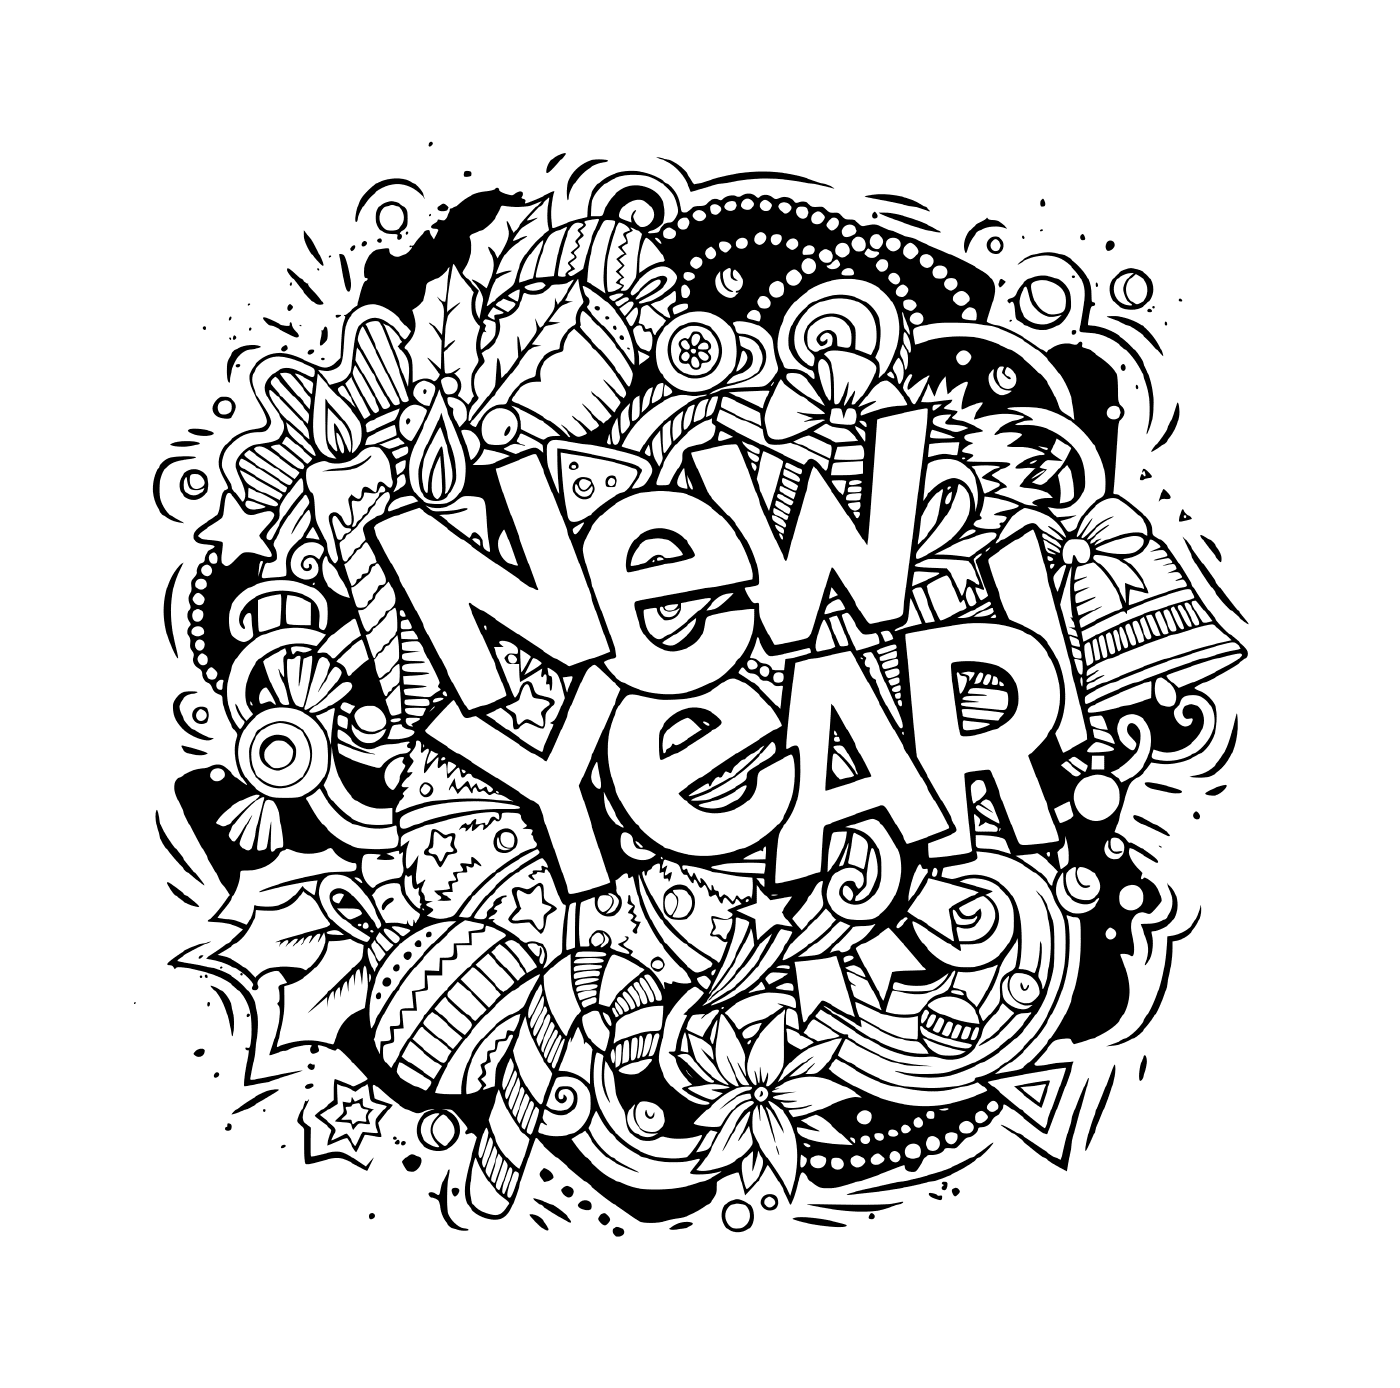  Doodles, objetos e elementos para o novo ano 